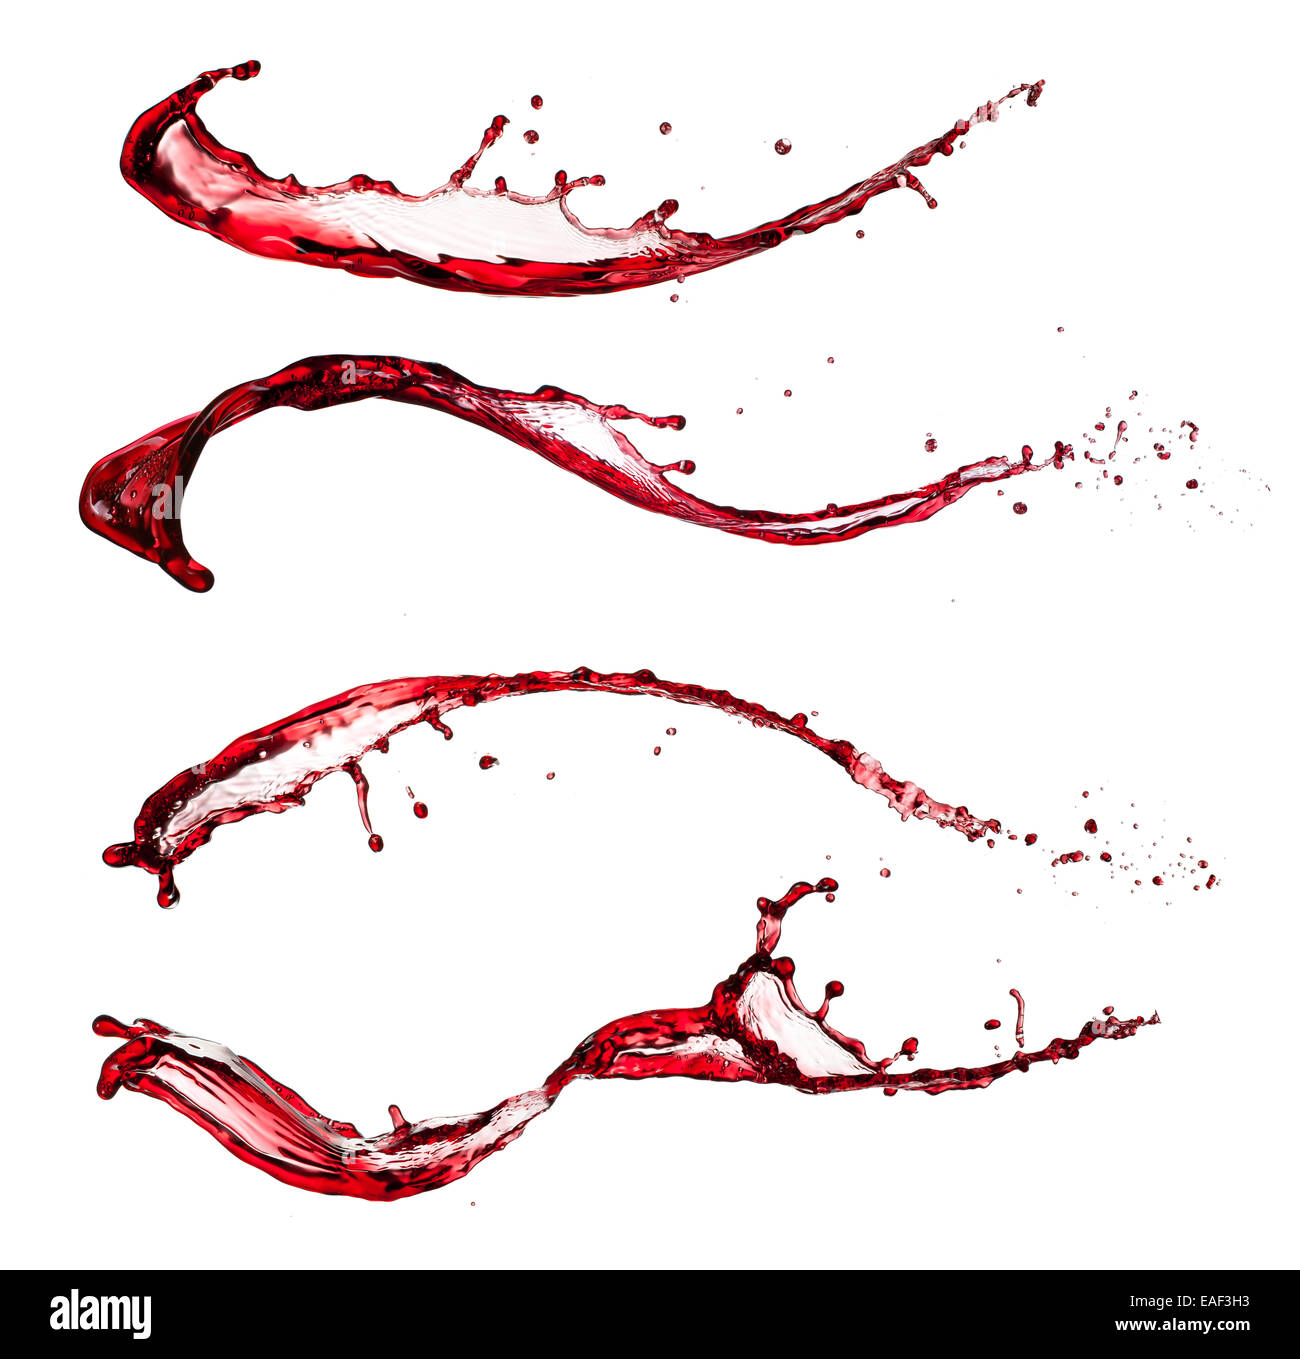 Colpo isolato di vino rosso schizzi su sfondo bianco Foto Stock